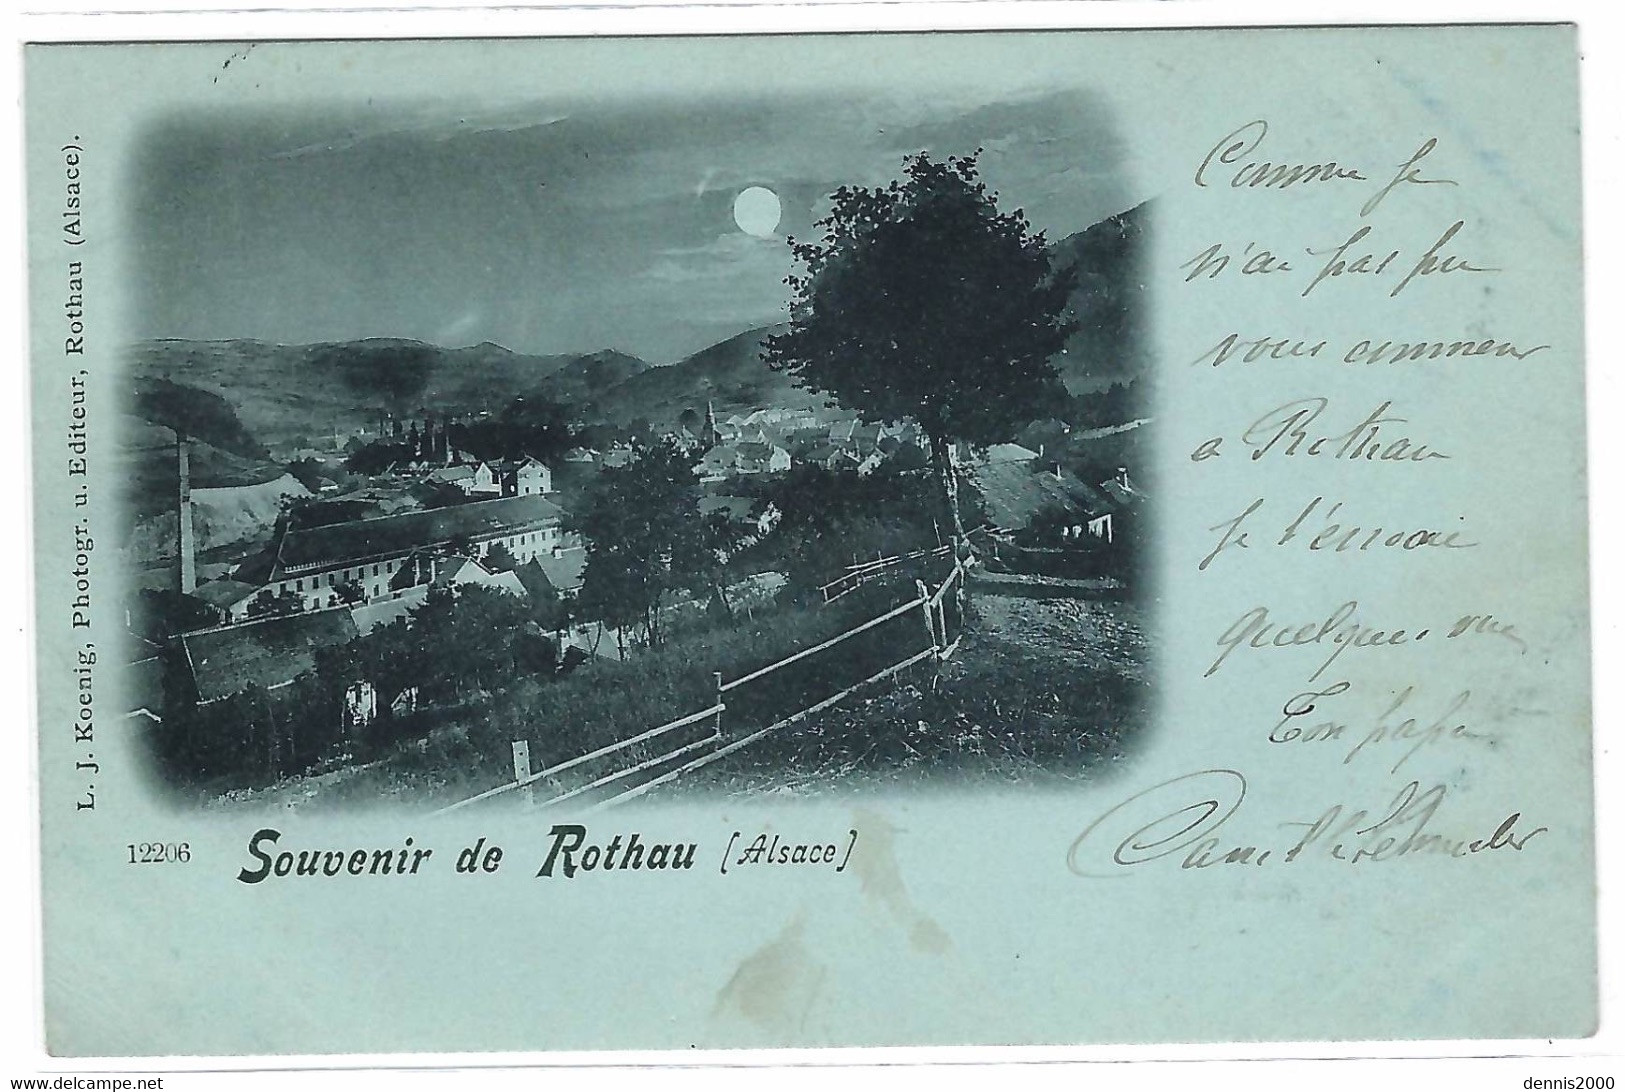 ROTHAU (67) - Souvenir De Rothau - Oblit. BAHNPOST ZUG 662, 1898 - Ed. Phot. L. J. Koenig, Rothau - Rothau